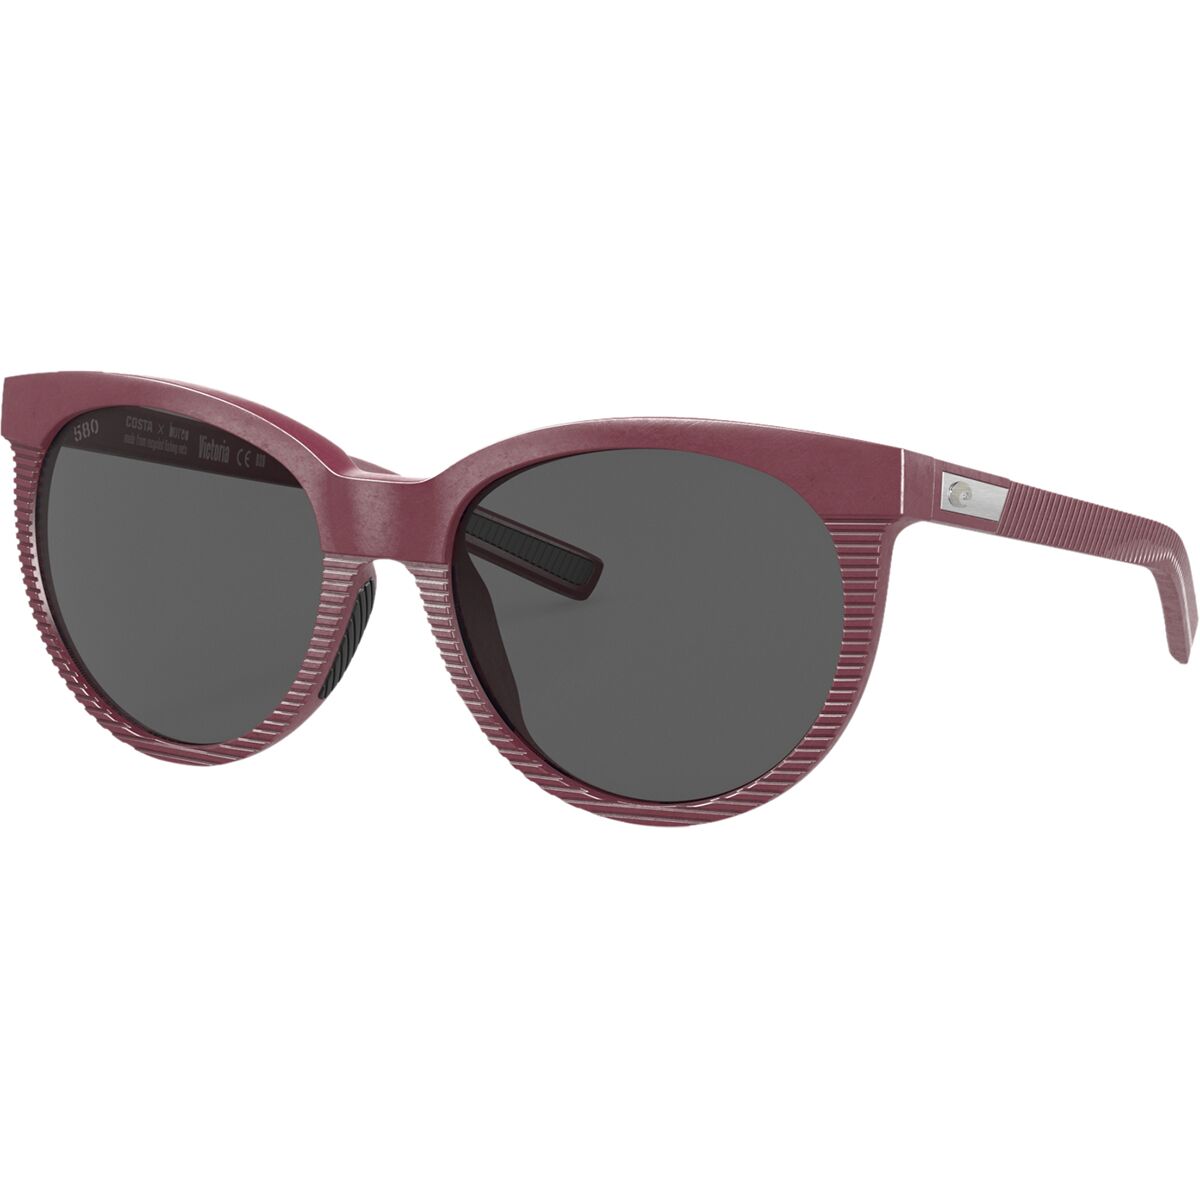 Costa Victoria Net 580G Polarized Sunglasses - Women's